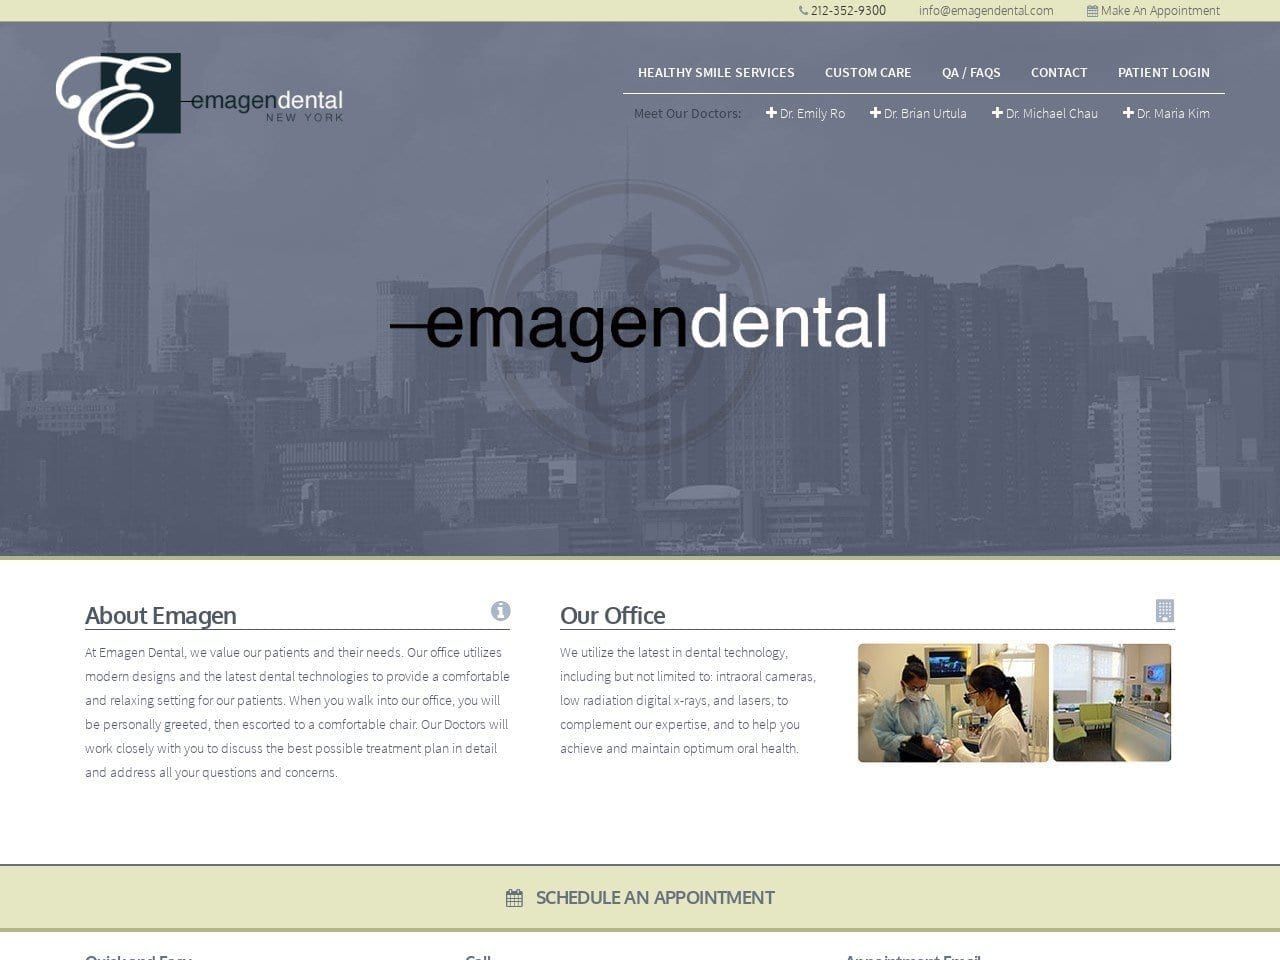 Emagen Dental Website Screenshot from emagendental.com